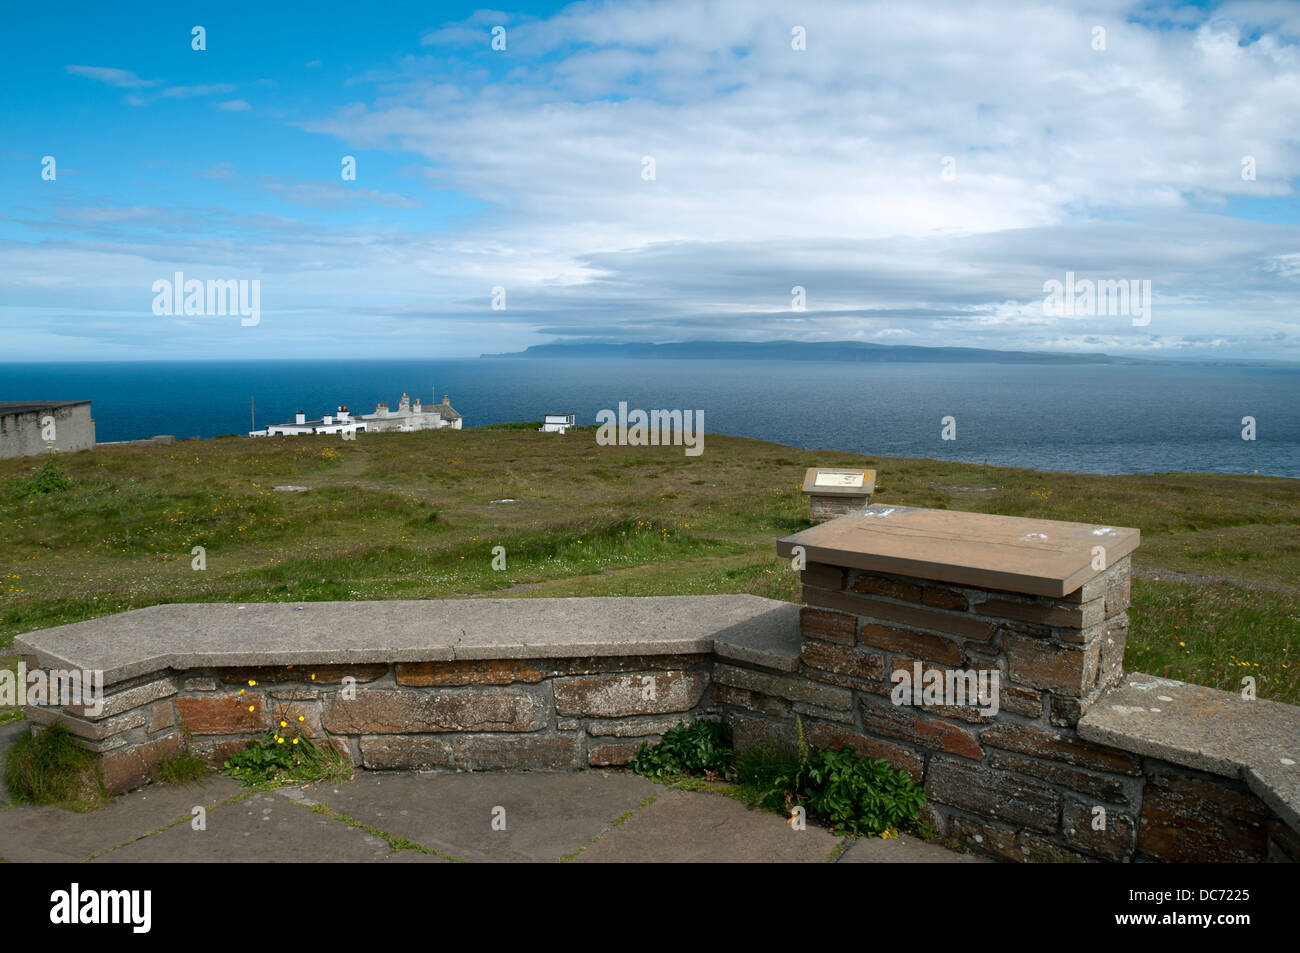 Hoy dans les îles Orkney de Dunnet Head, le point le plus au nord du continent britannique. Caithness, Ecosse, Royaume-Uni. Banque D'Images